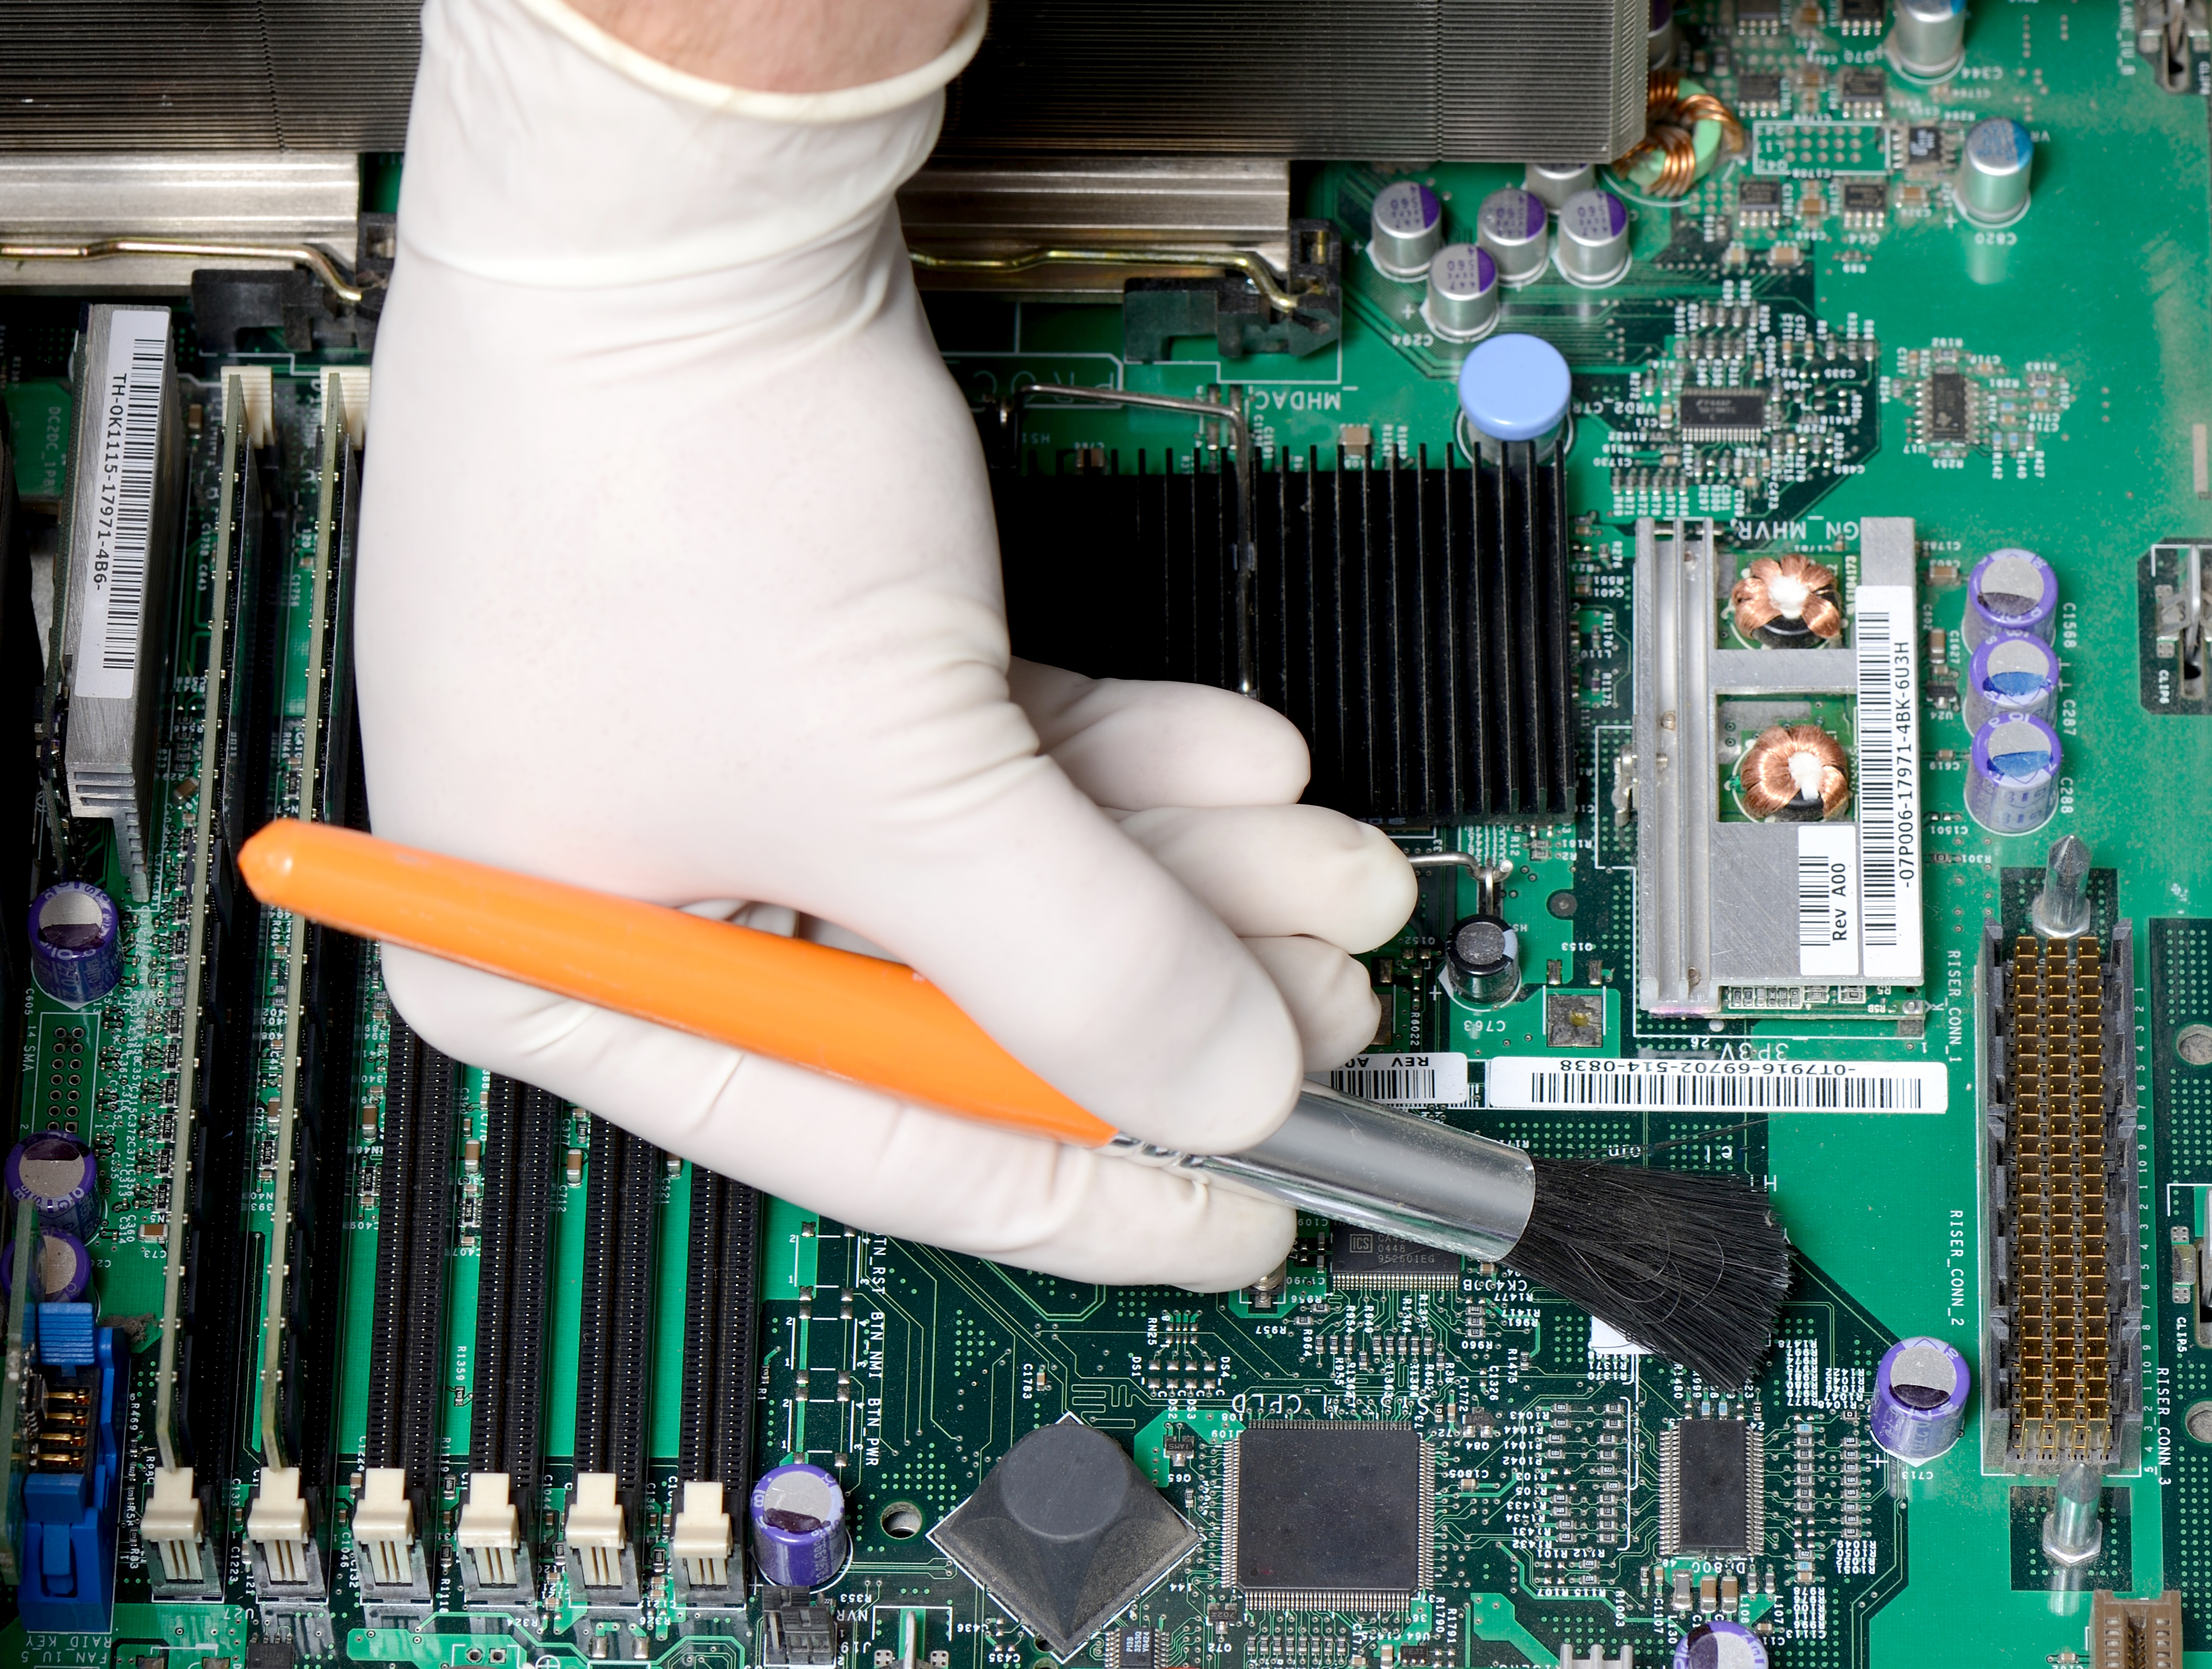 El servicio de mantenimiento en computadoras debe realizarse entre una y dos veces al año. (Prensa Libre: Shutterstock)